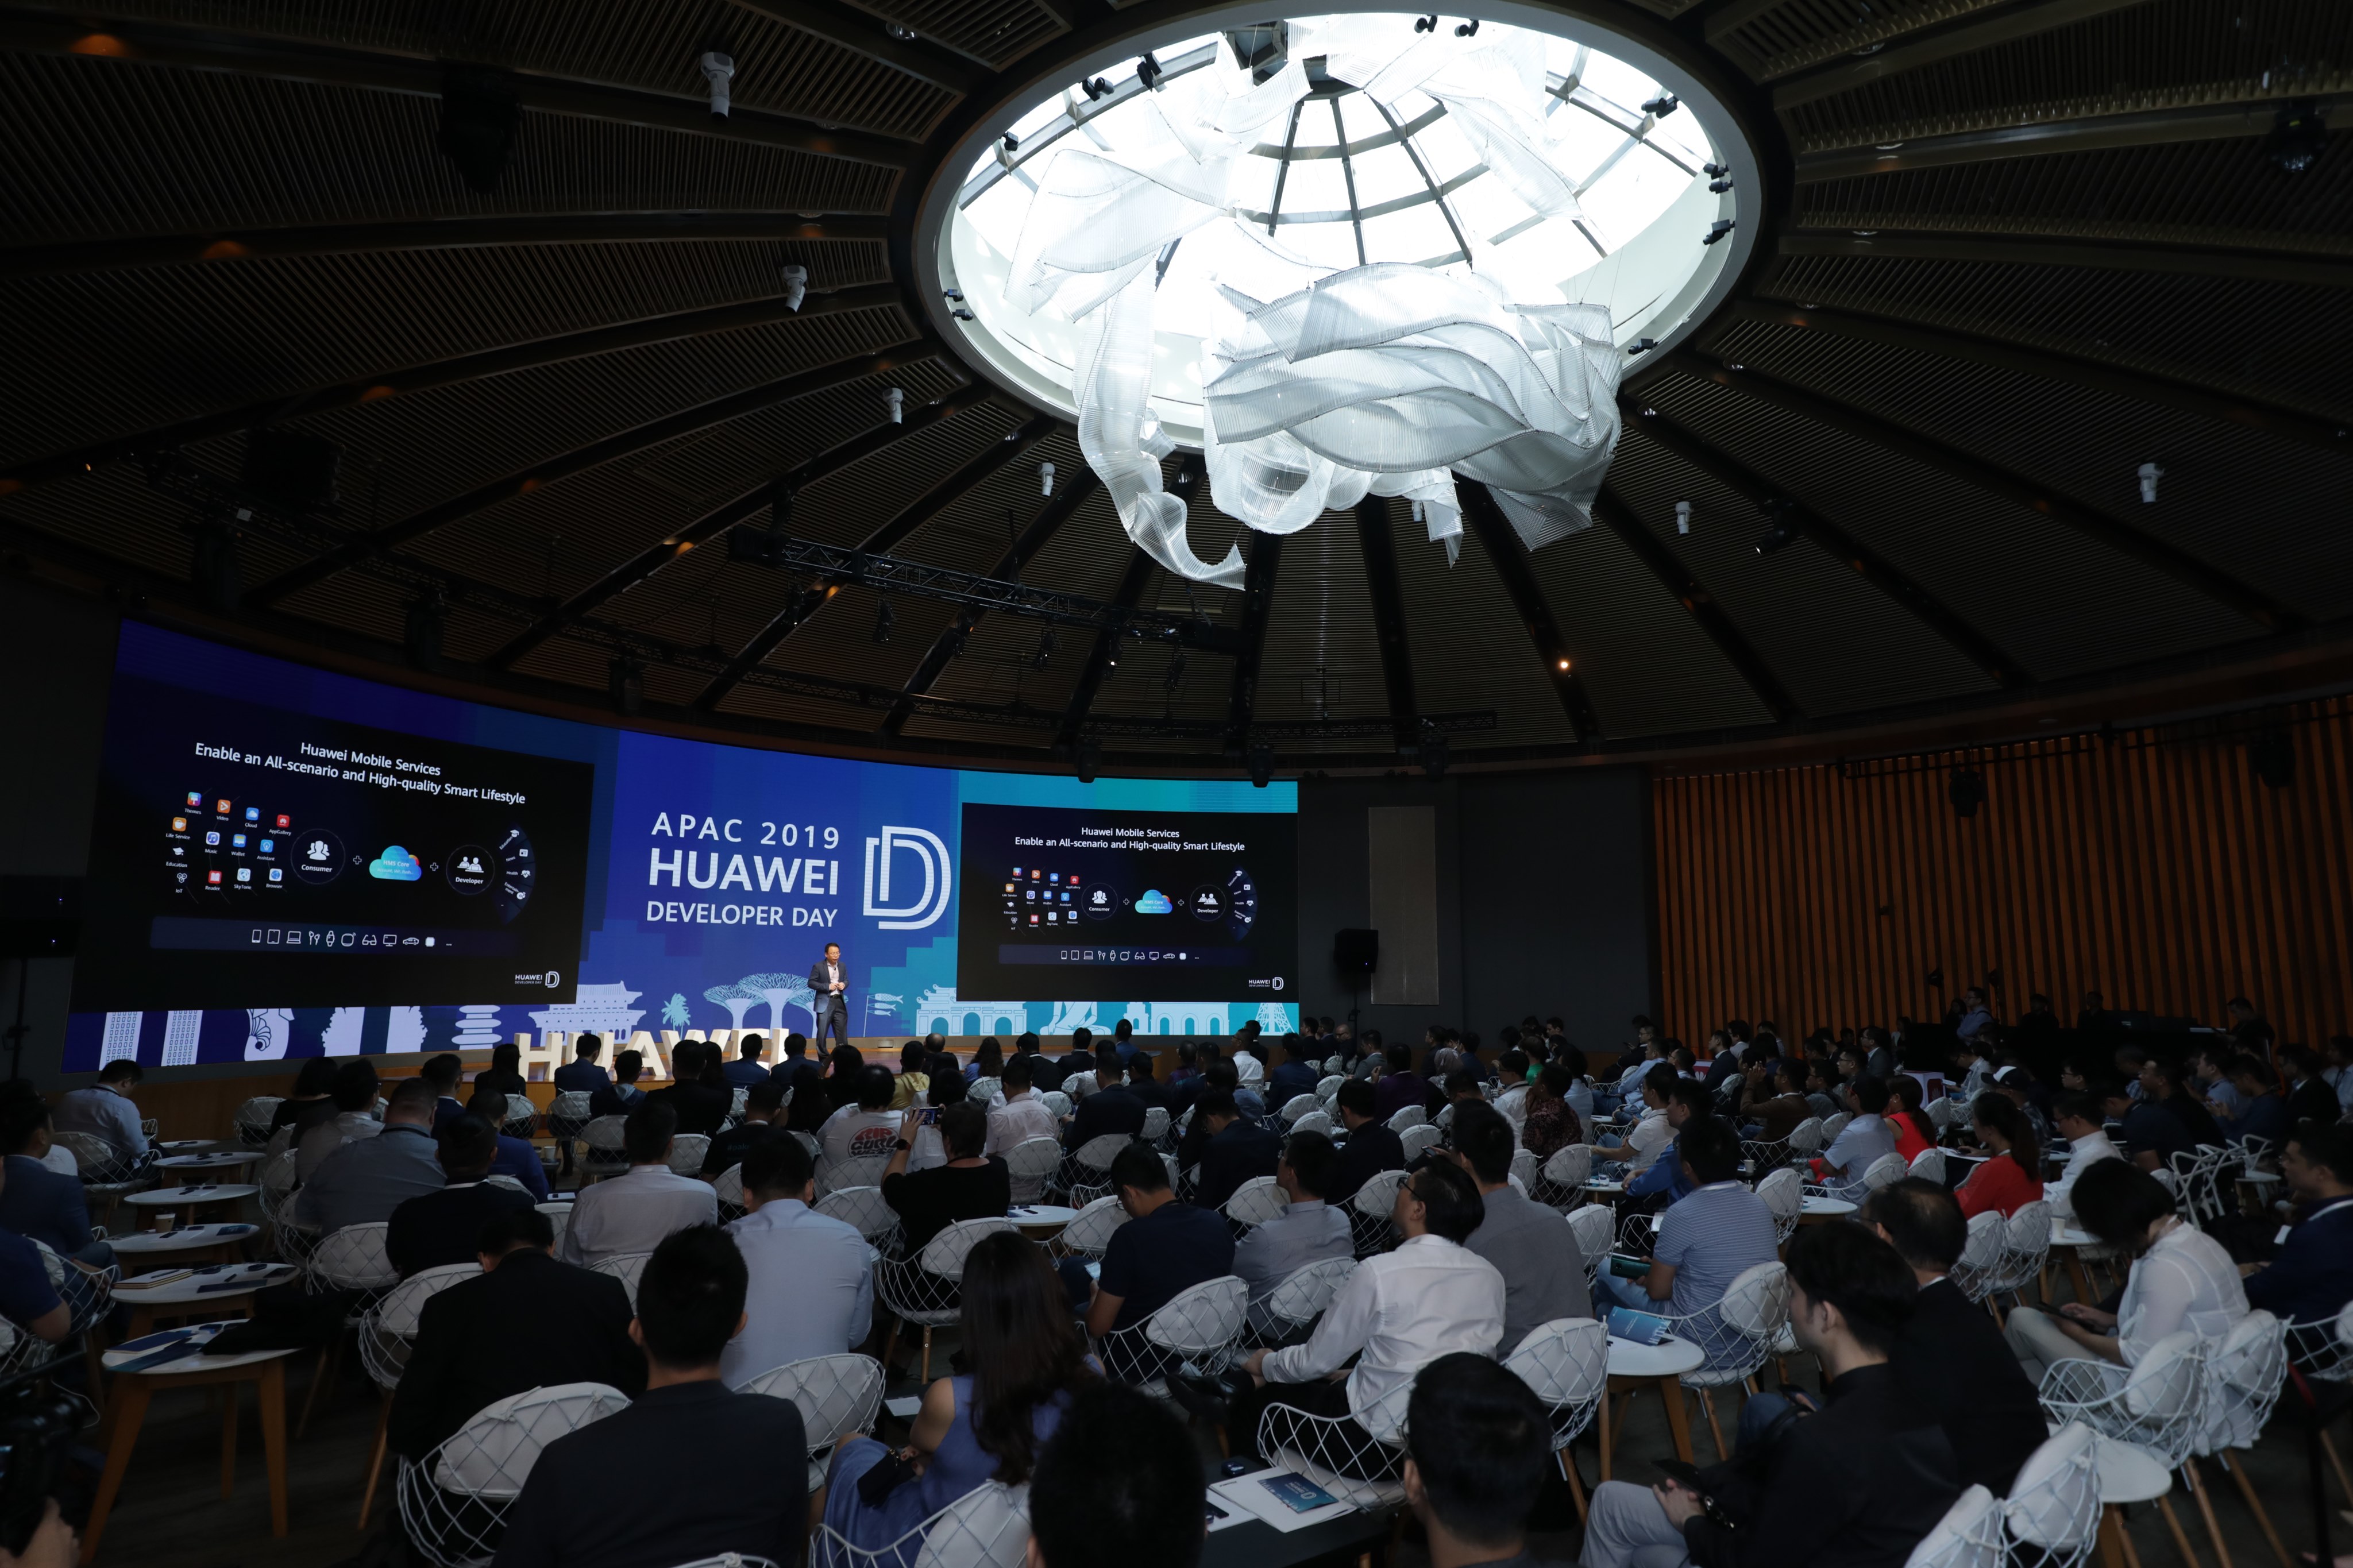 Huawei công bố đầu tư 1 tỷ đô-la vào Hệ sinh thái Huawei tại Ngày hội Nhà phát triển Huawei châu Á - Thái Bình Dương 2019